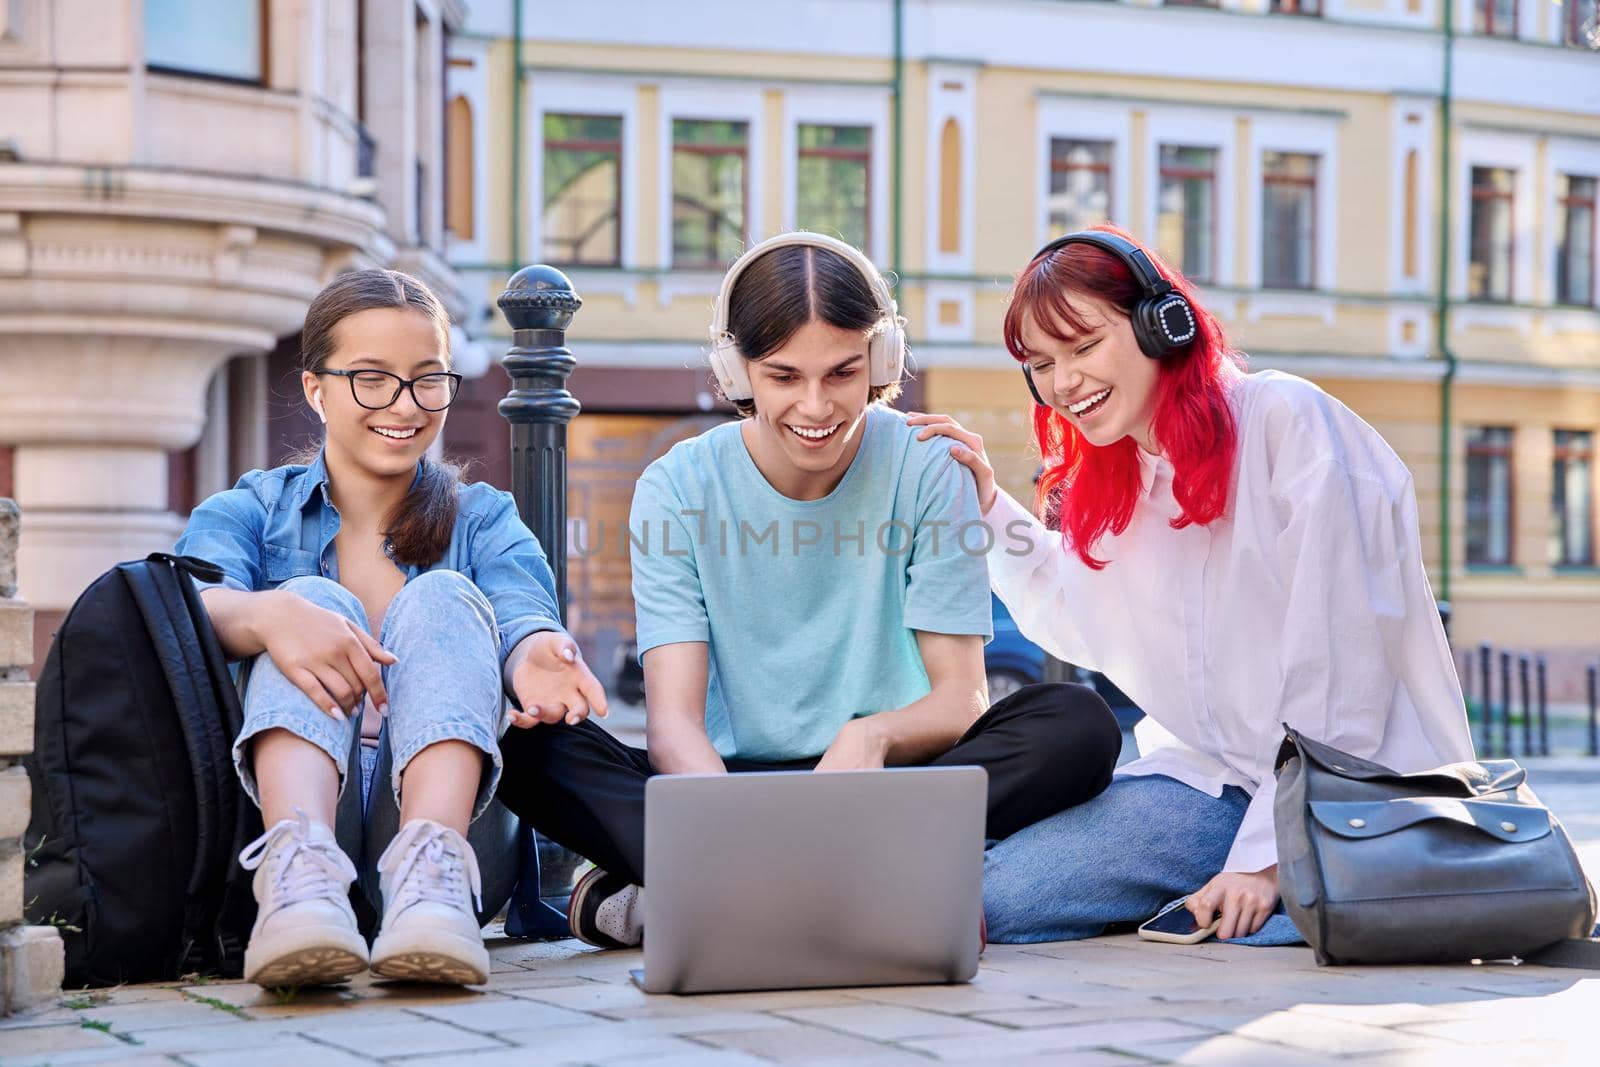 Teenage friends in headphones looking at a laptop by VH-studio